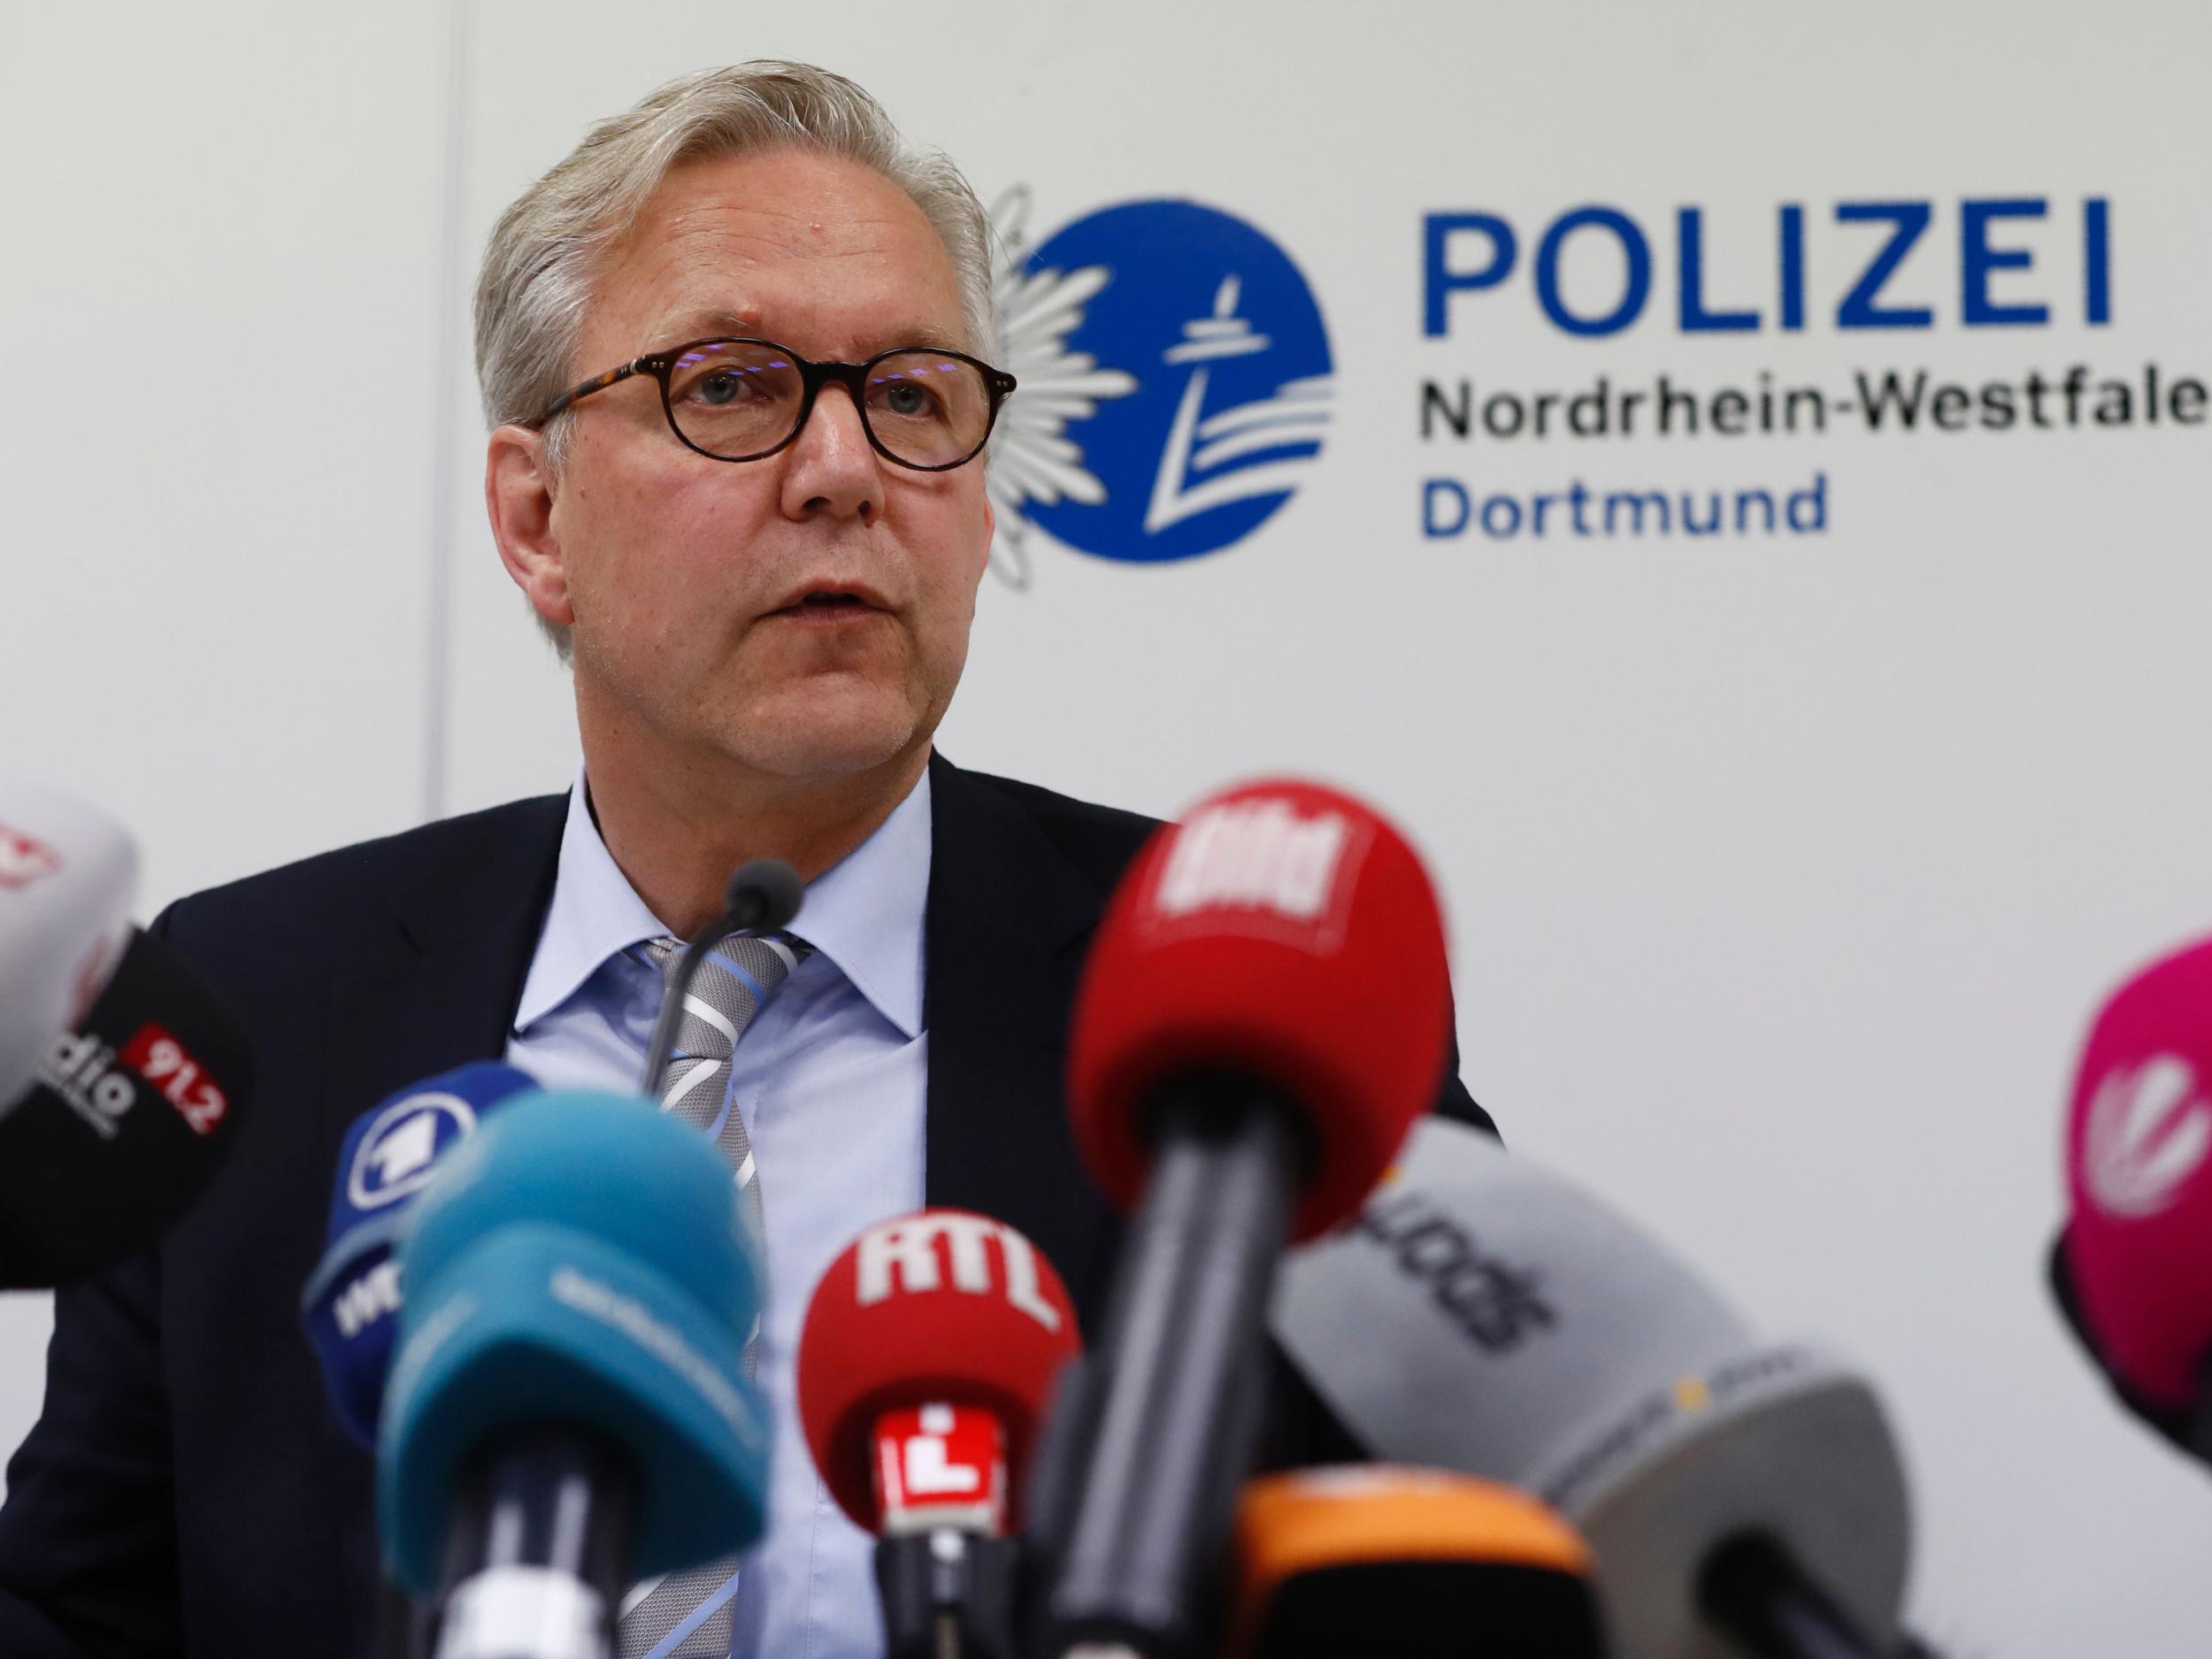 Dortmund Chief of Police, Gregor Lange addresses a press conference